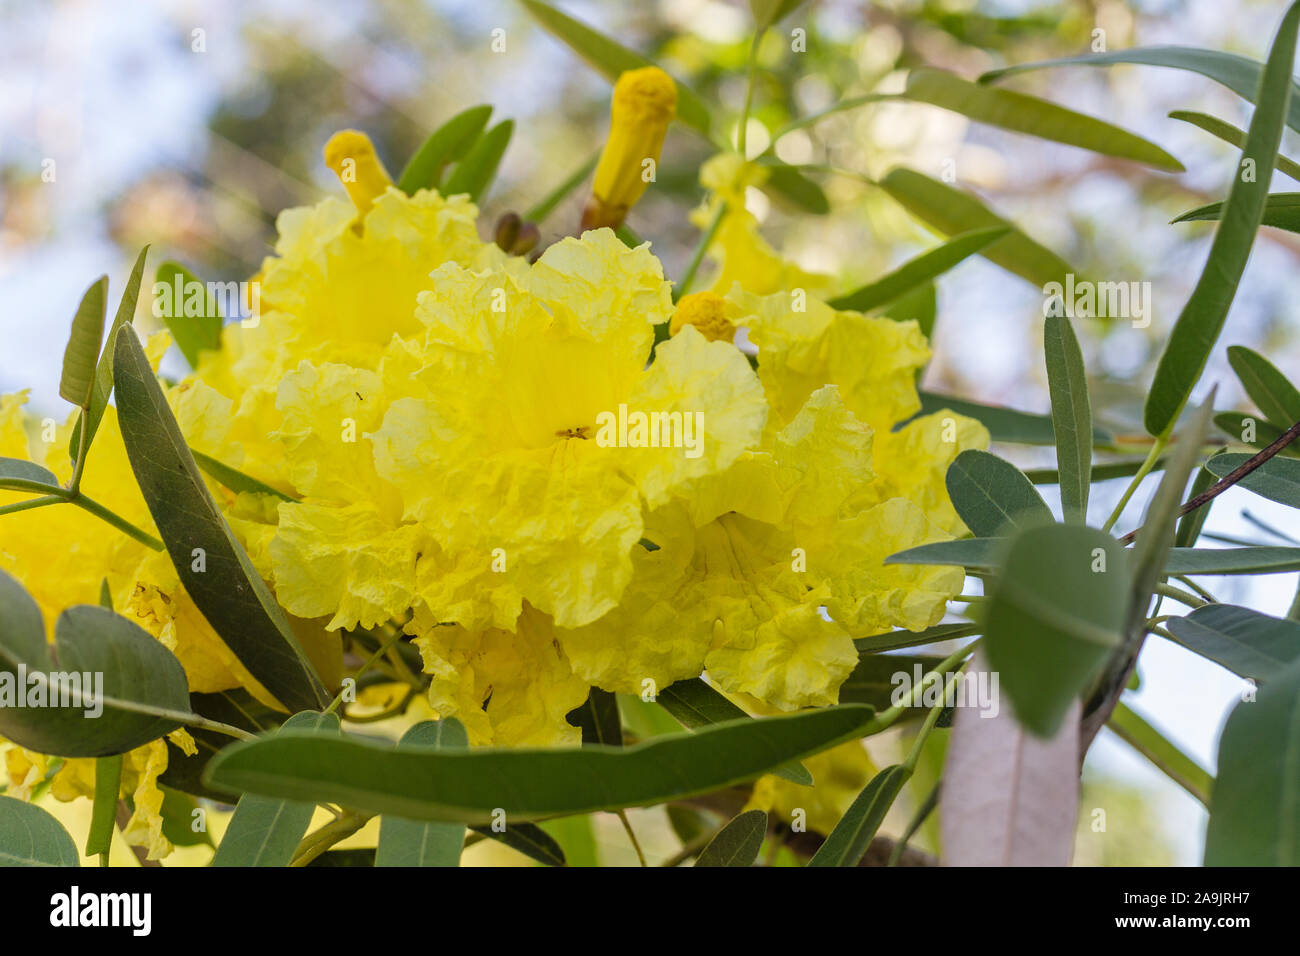 Gelbe Blumen von Handroanthus chrysotrichus oder Goldene Trompete Baum. Bali, Indonesien. Stockfoto